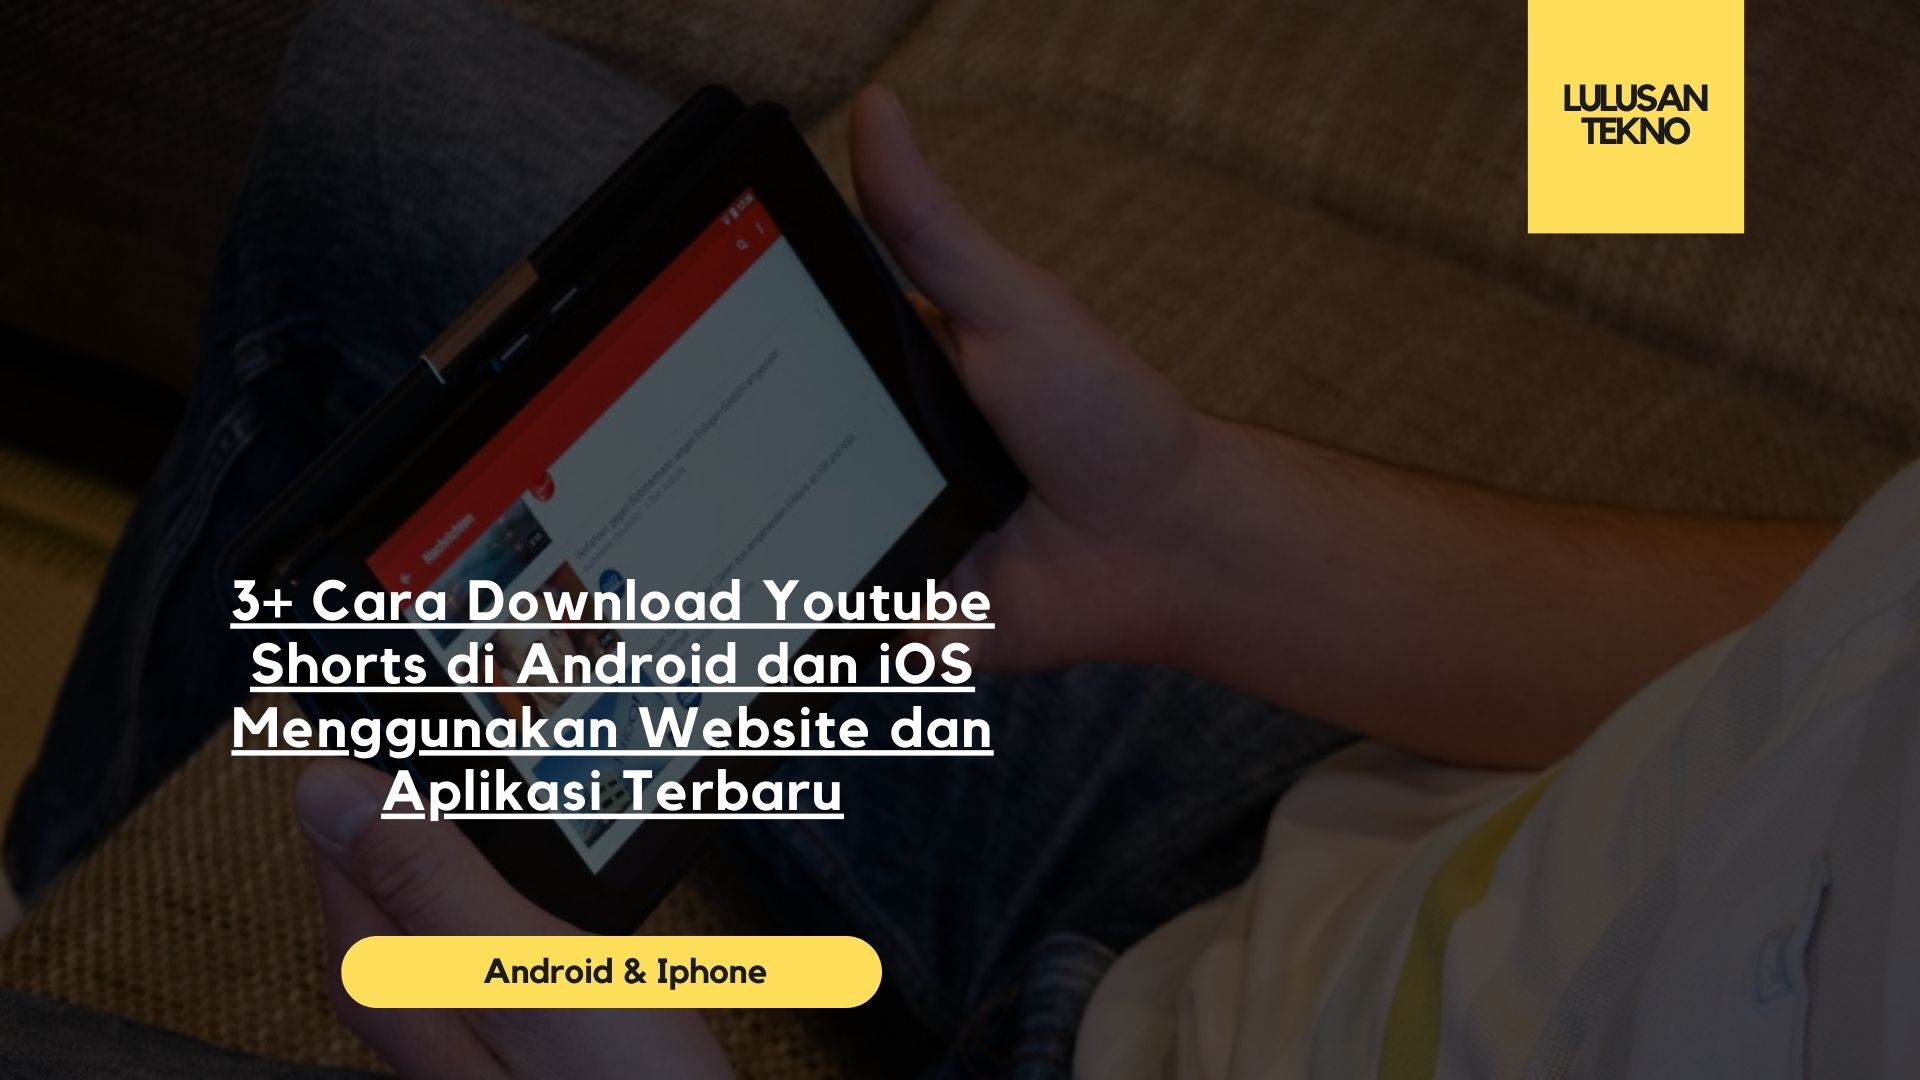 3+ Cara Download Youtube Shorts di Android dan iOS Menggunakan Website dan Aplikasi Terbaru